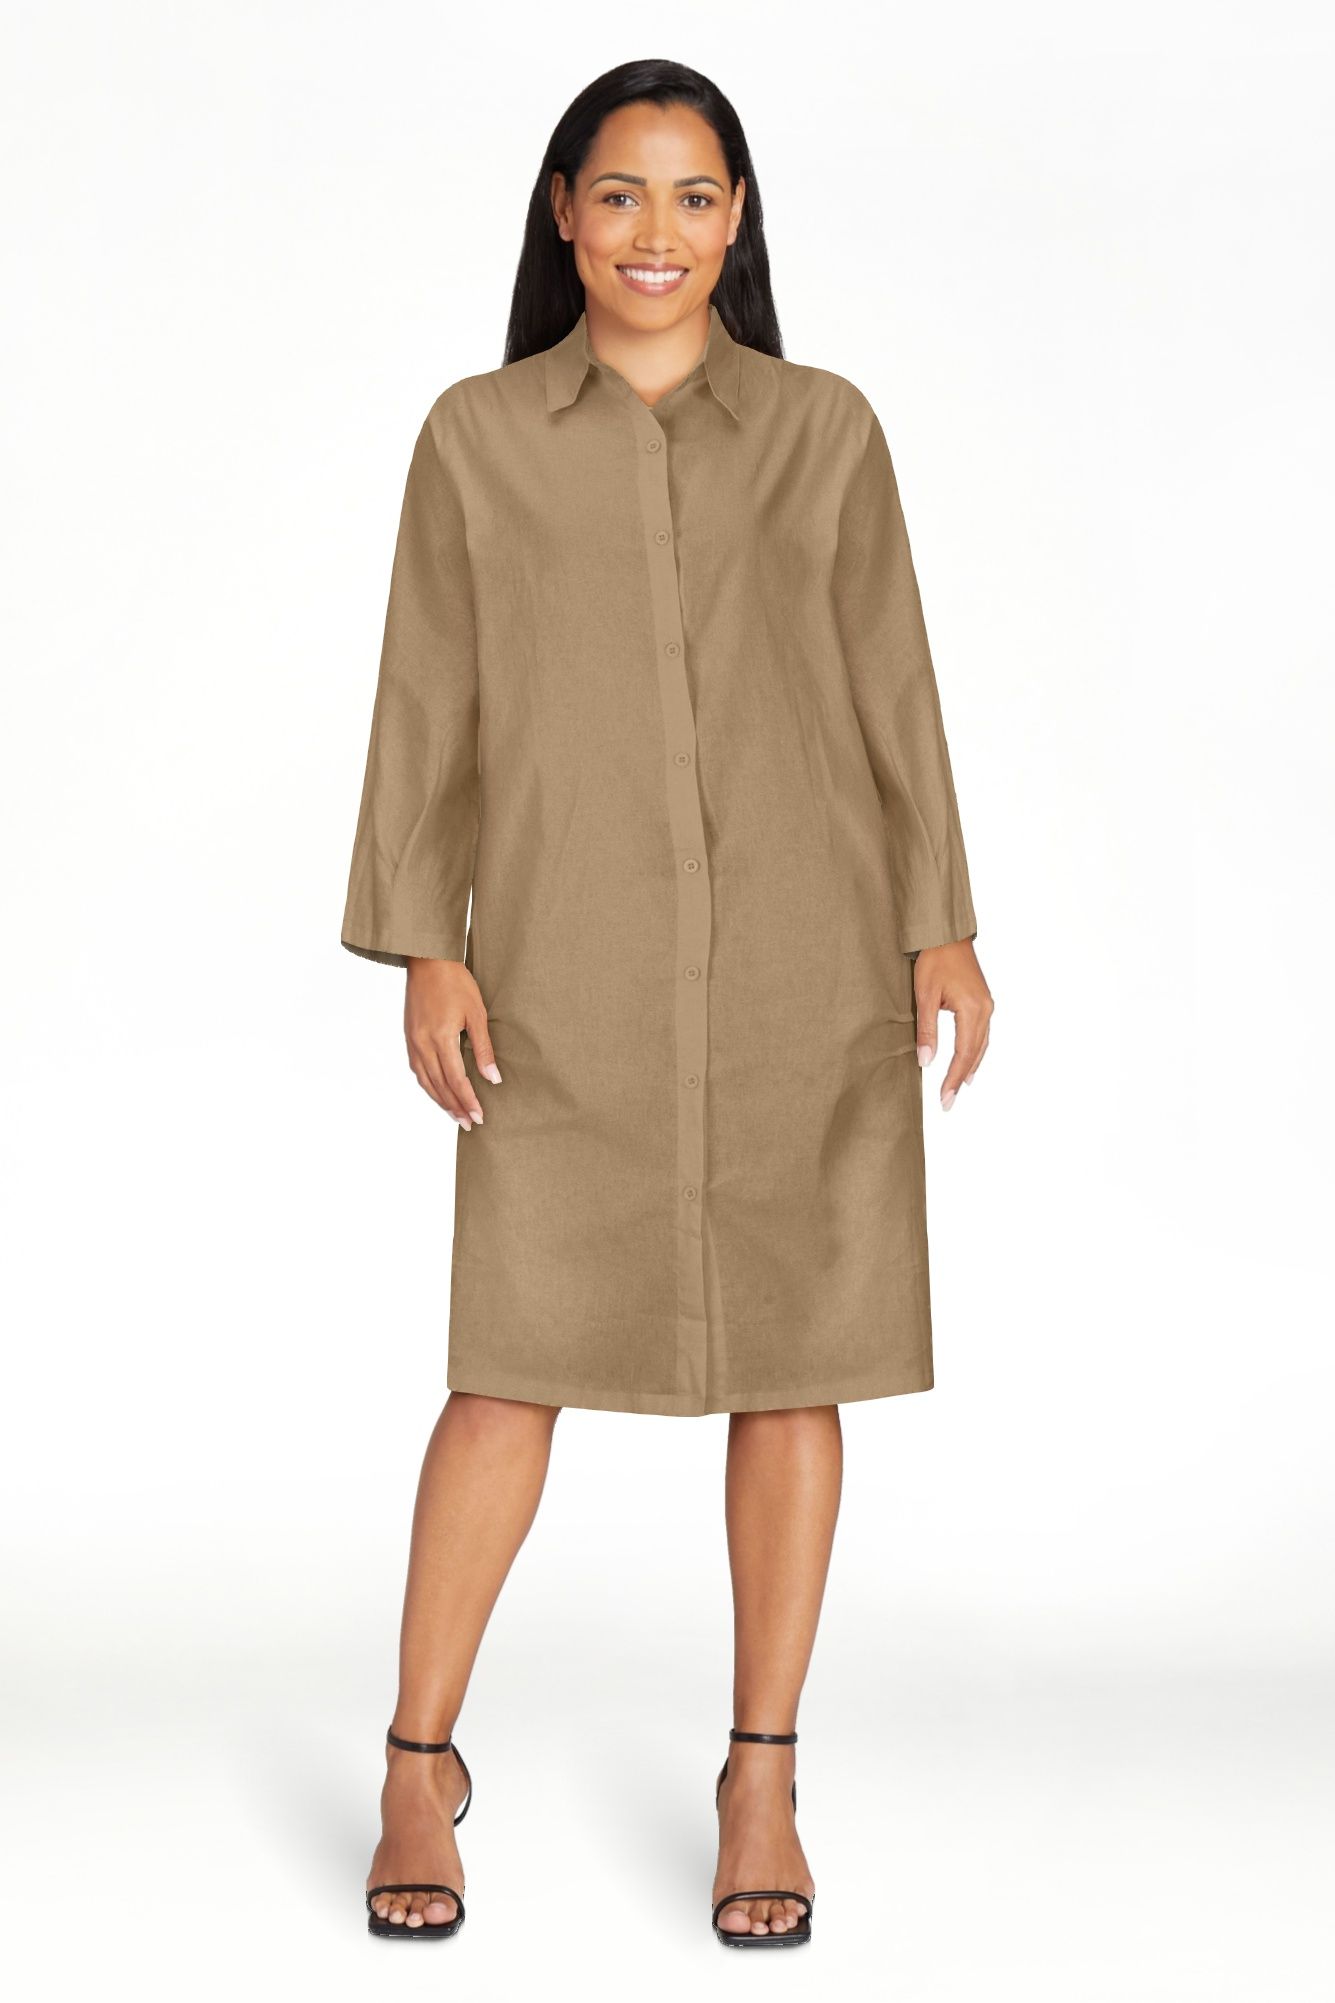 Women's Cotton Linen Shirt Dress Button Down Long Sleeve Collared Knee Length Blouse Dress Plain ... | Walmart (US)